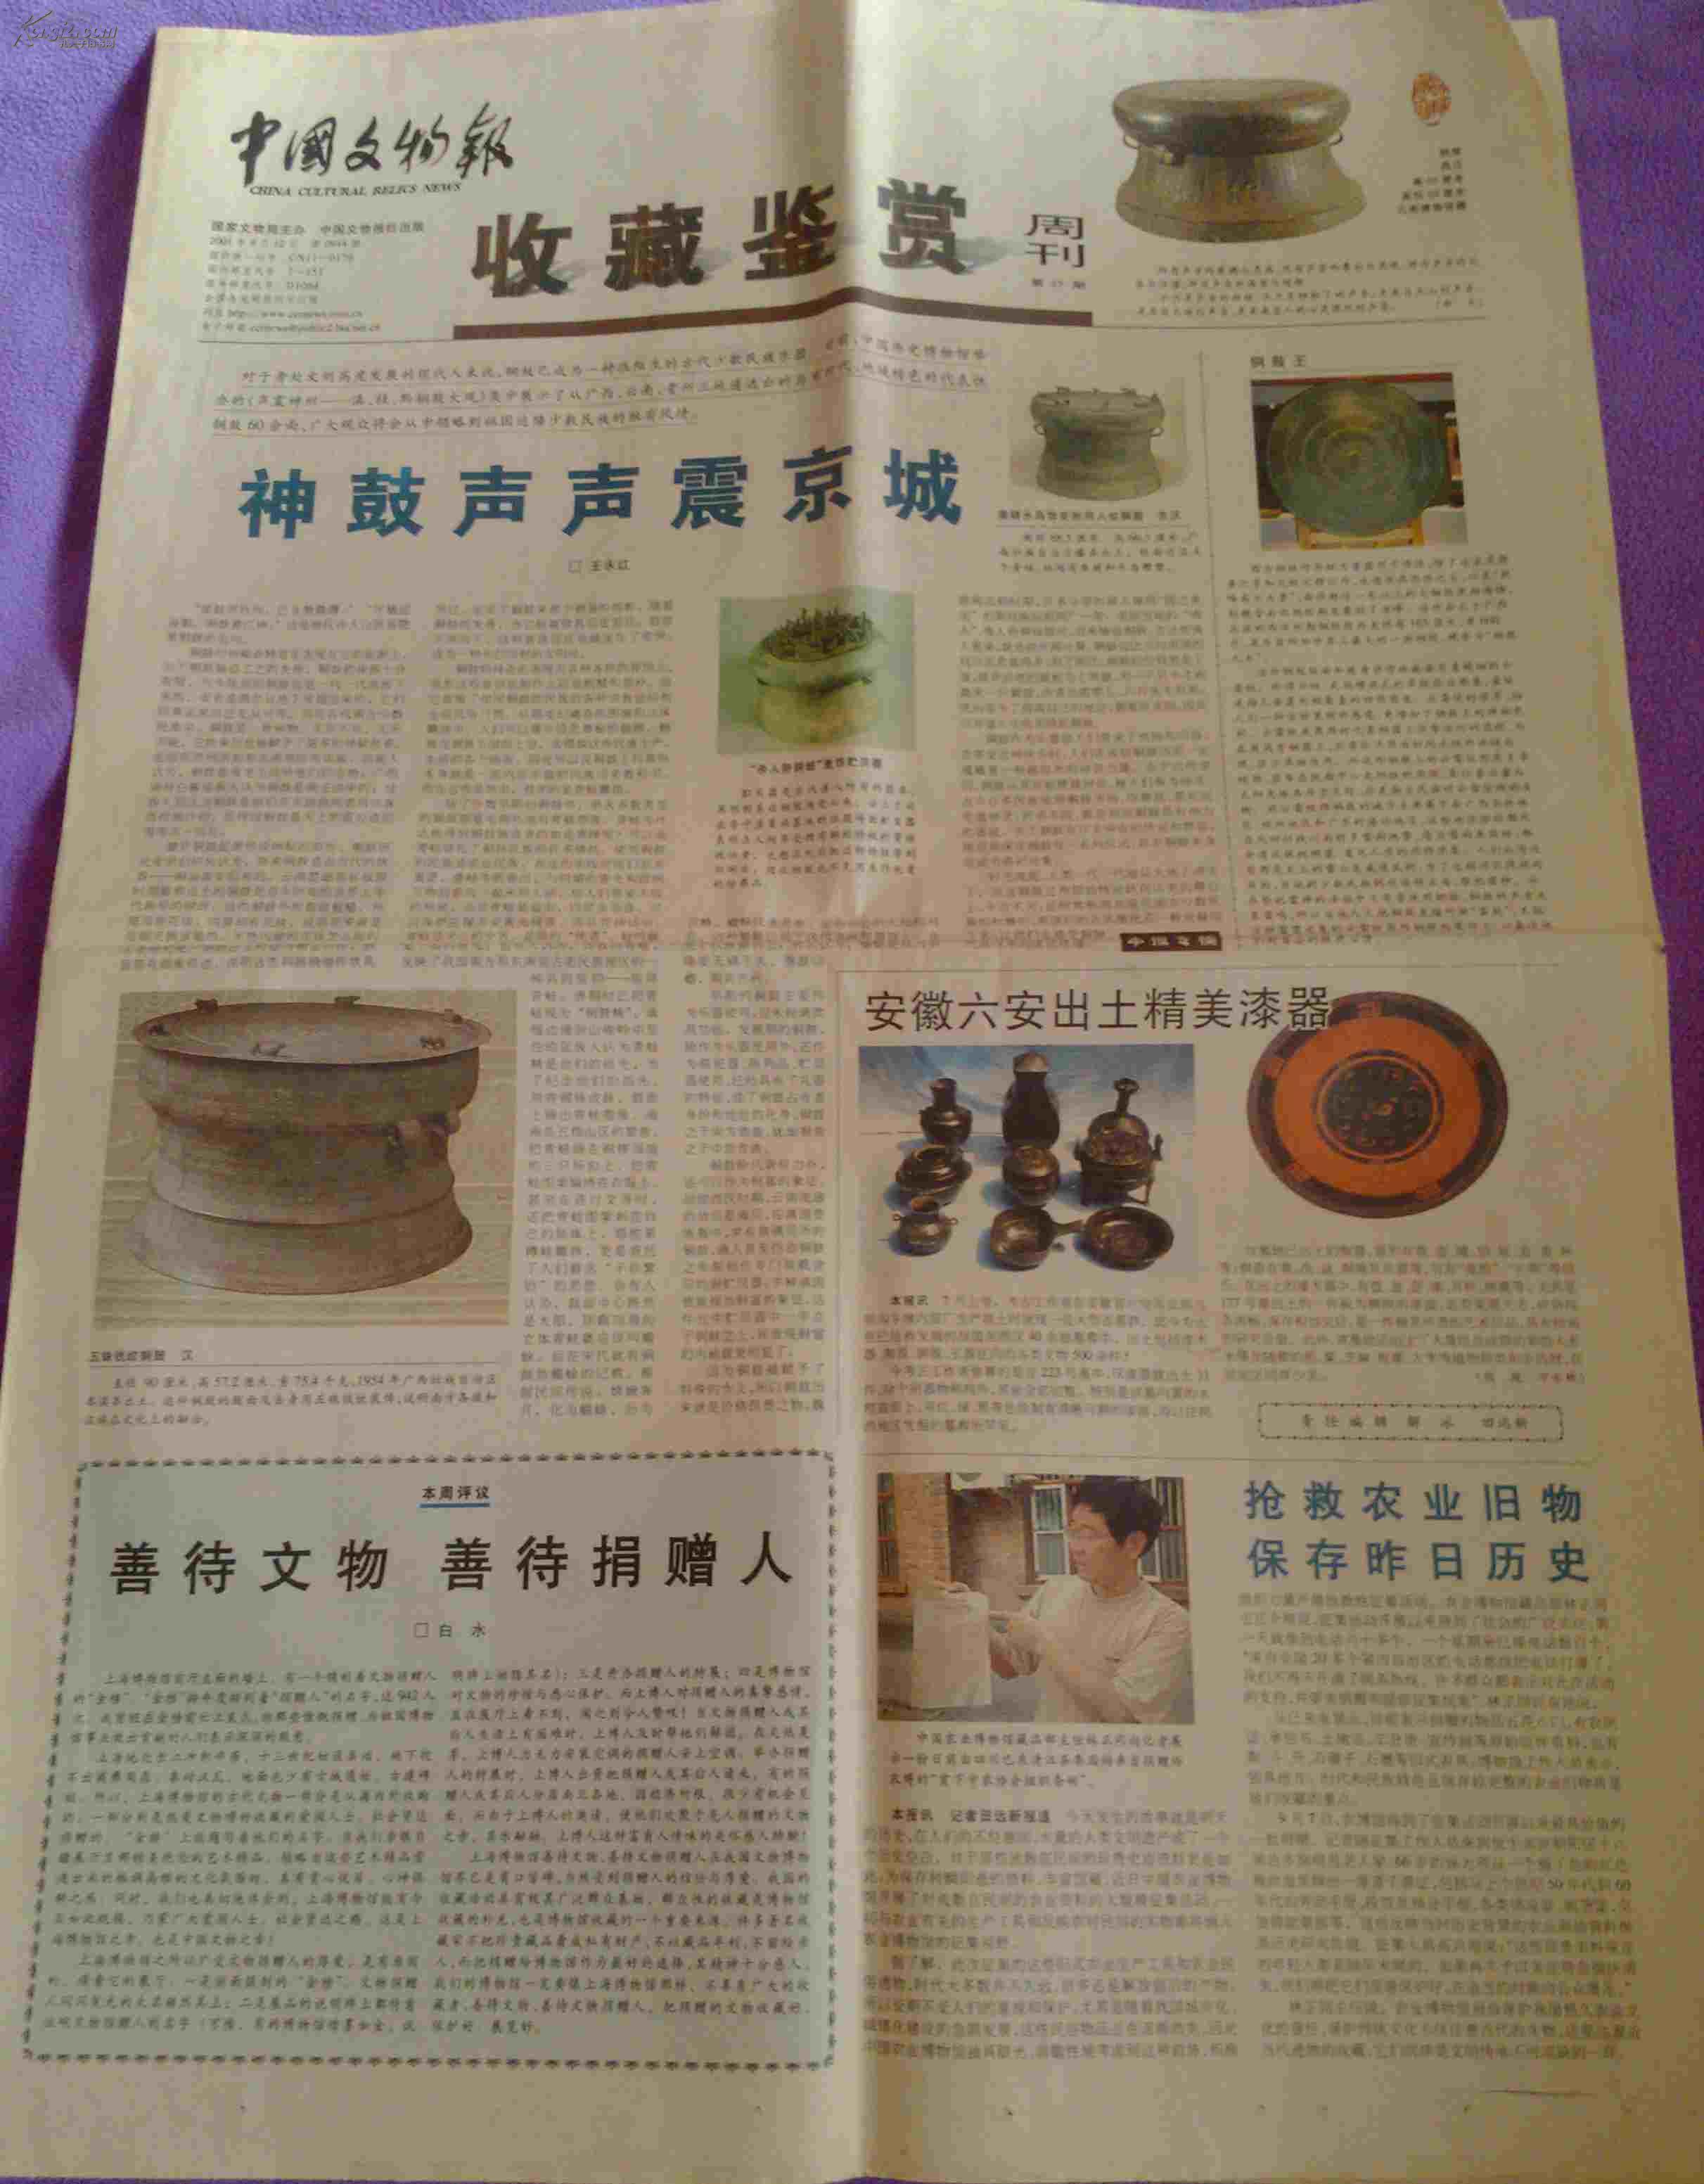 中国文物报 收藏鉴赏周刊 第一期 第35期各8版全